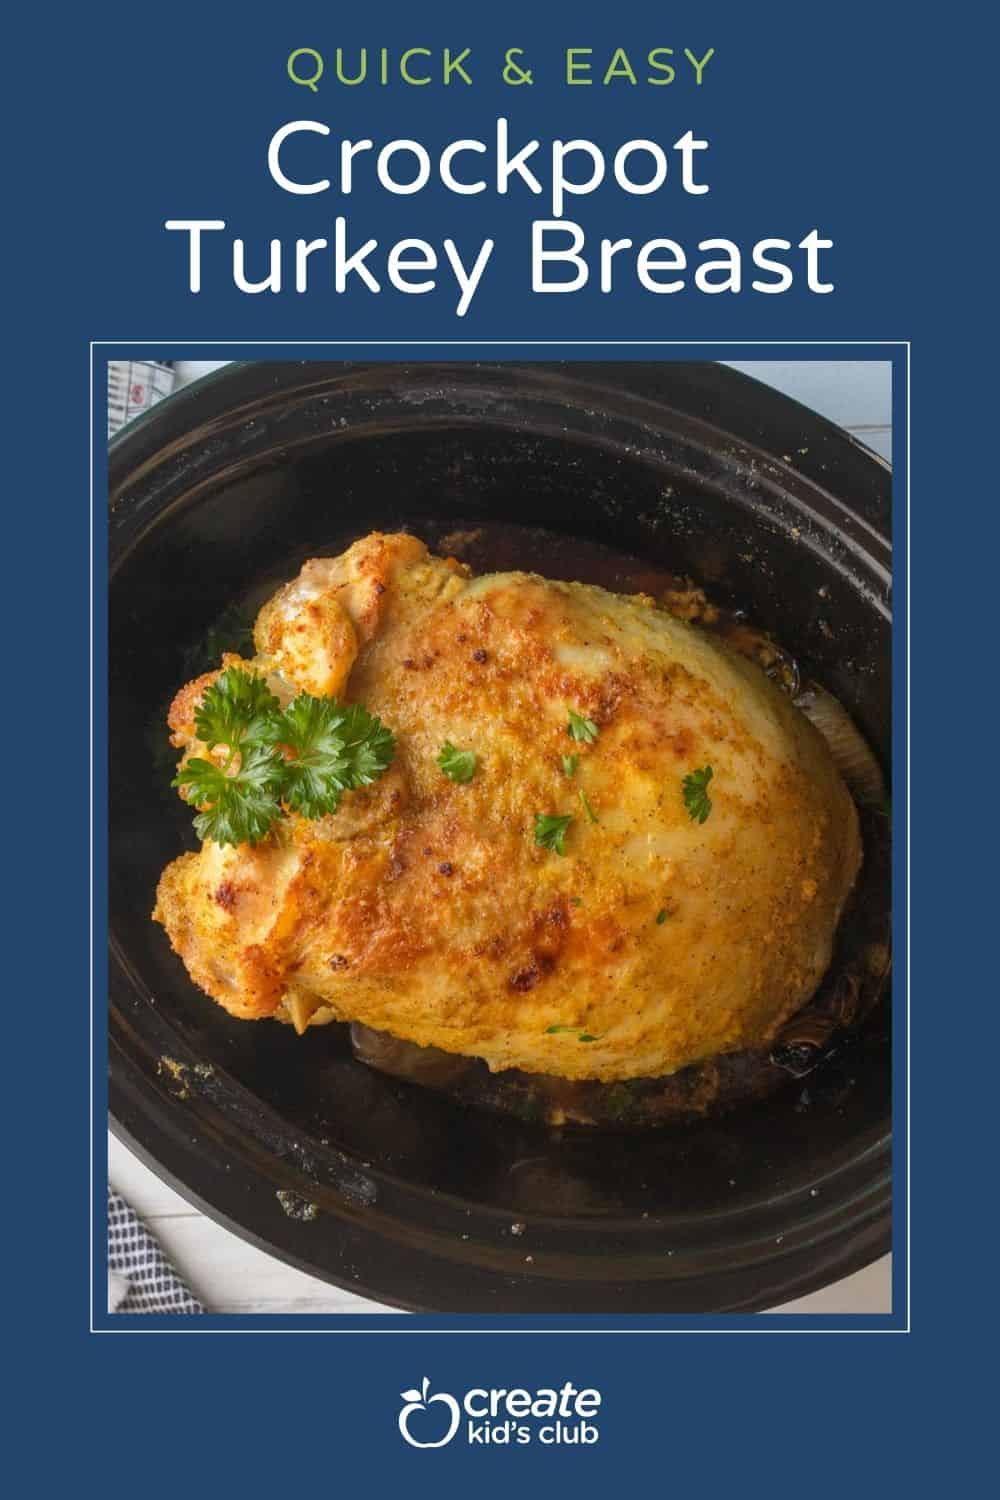 pin of crockpot turkey breast